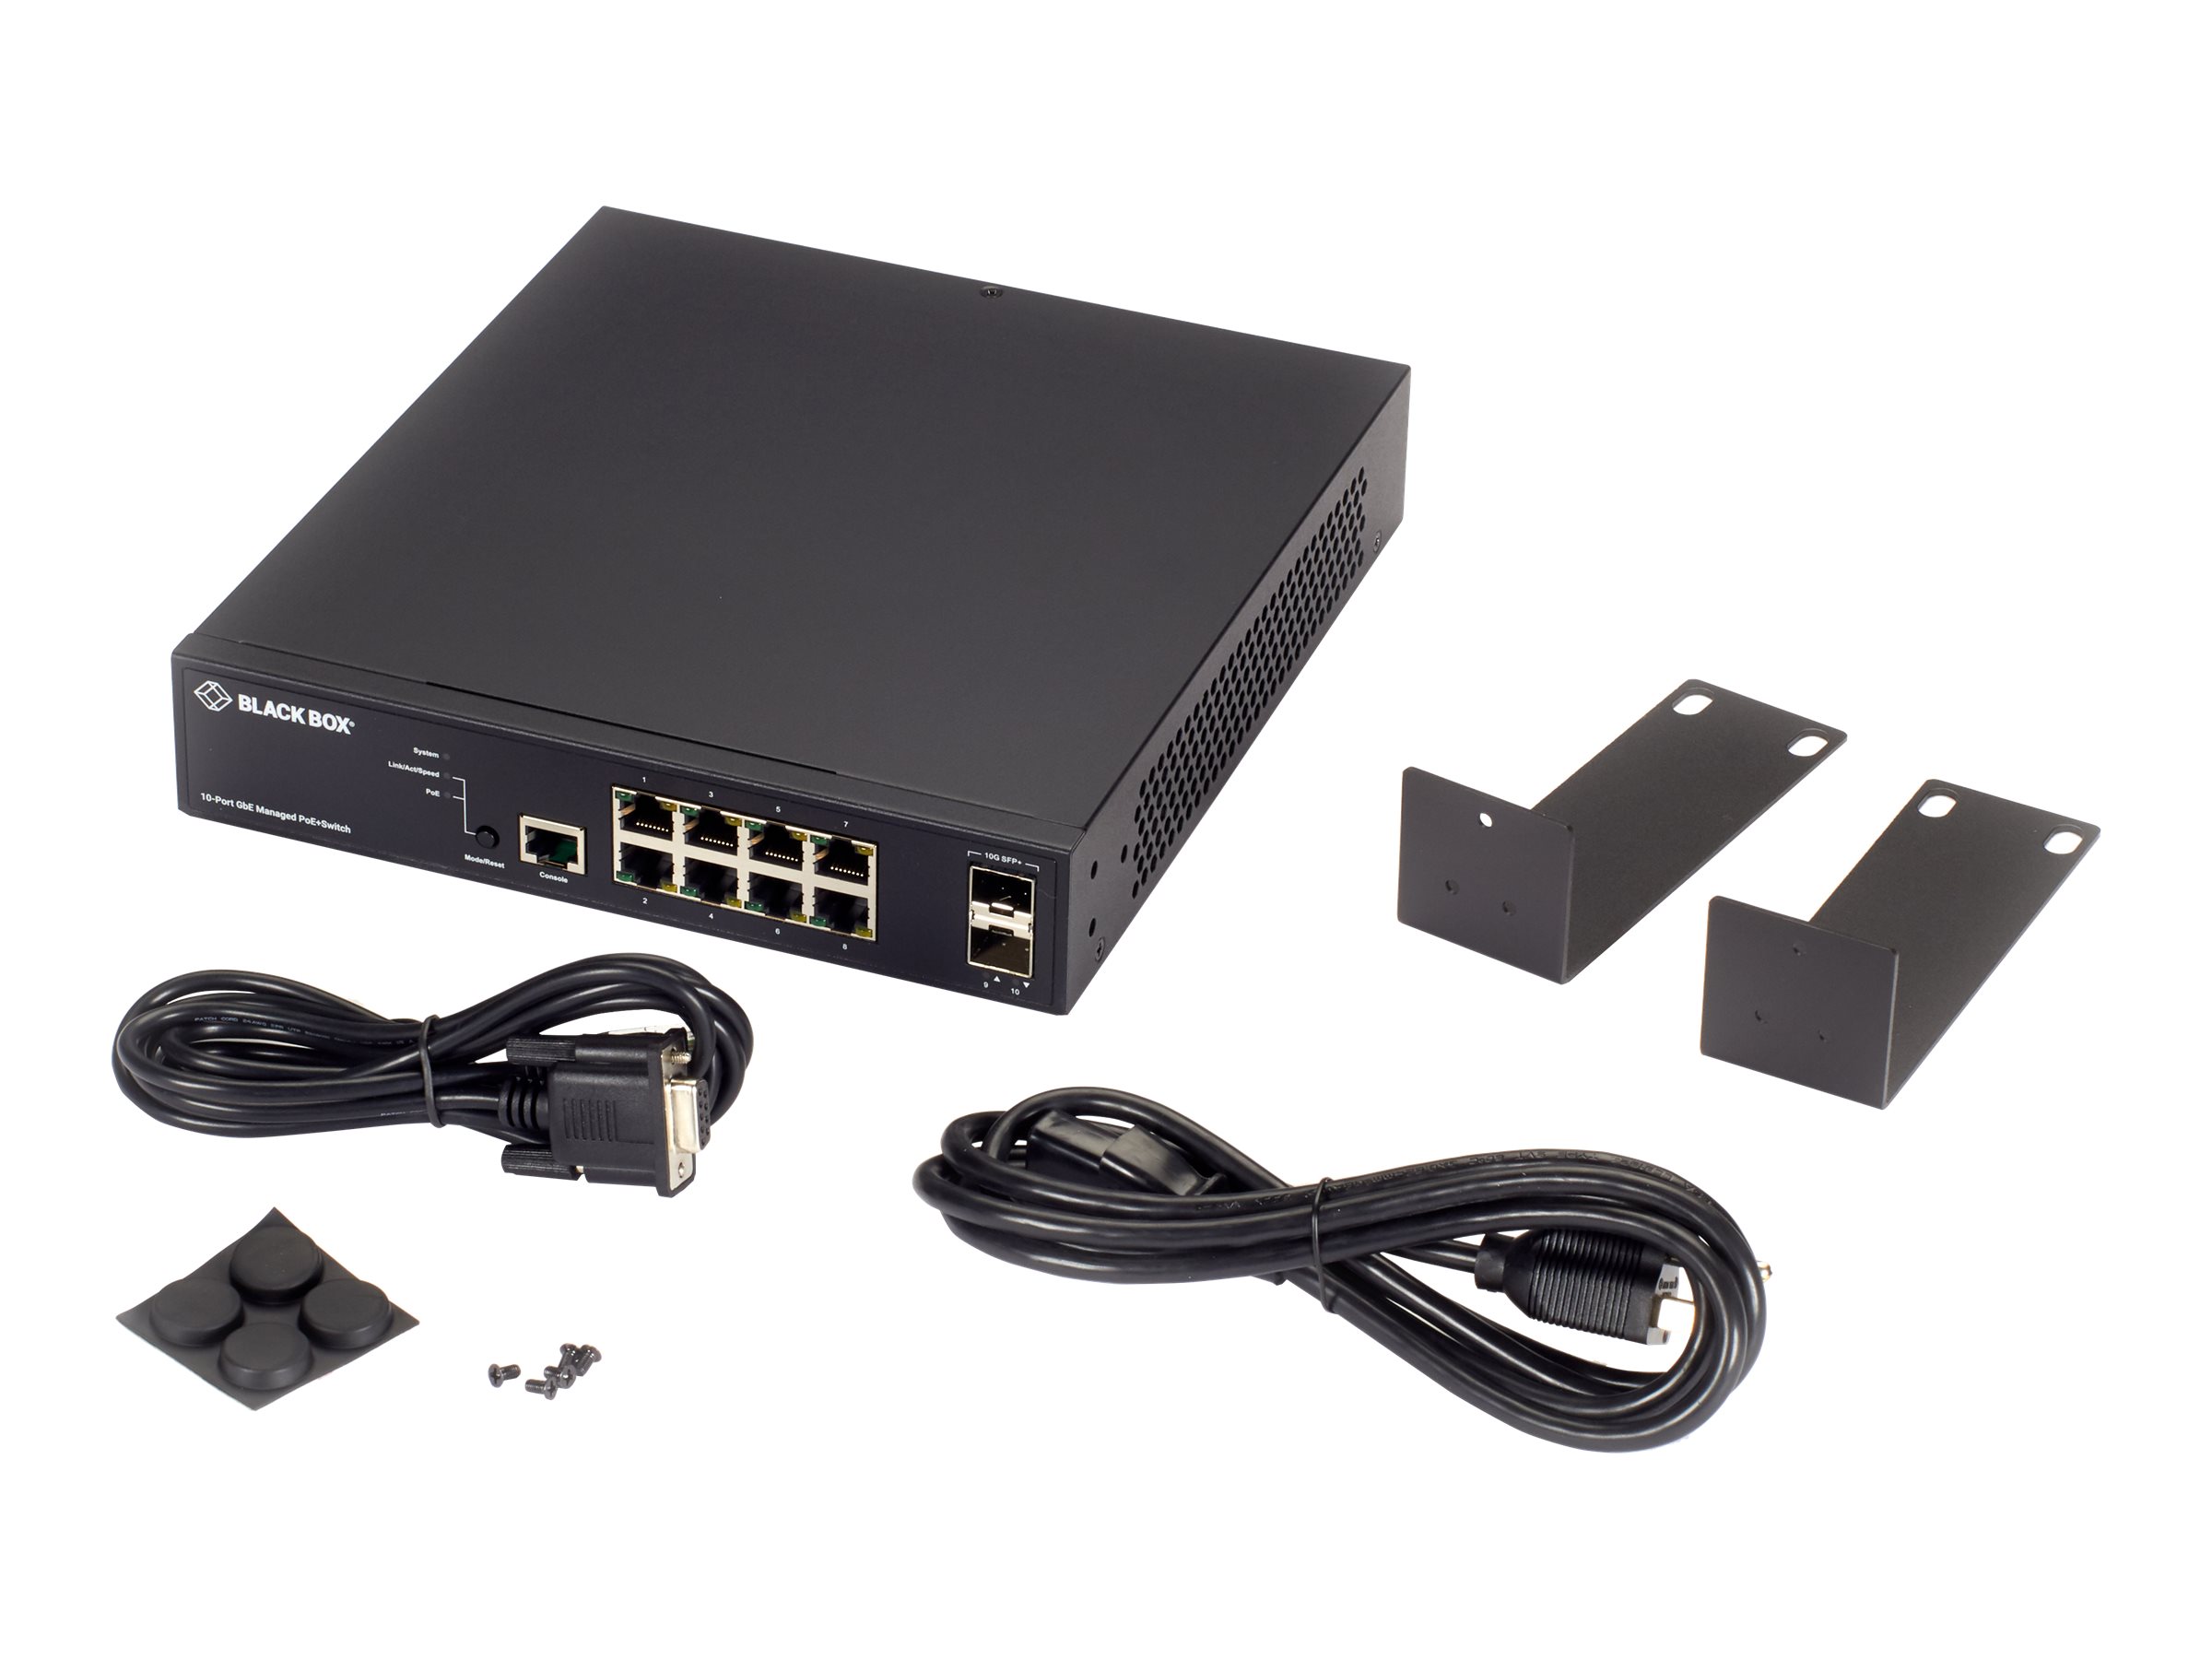 Black Box LPB3000 Series LPB3010A - switch - 10 ports - managed - LPB3010A  - PoE Injectors 